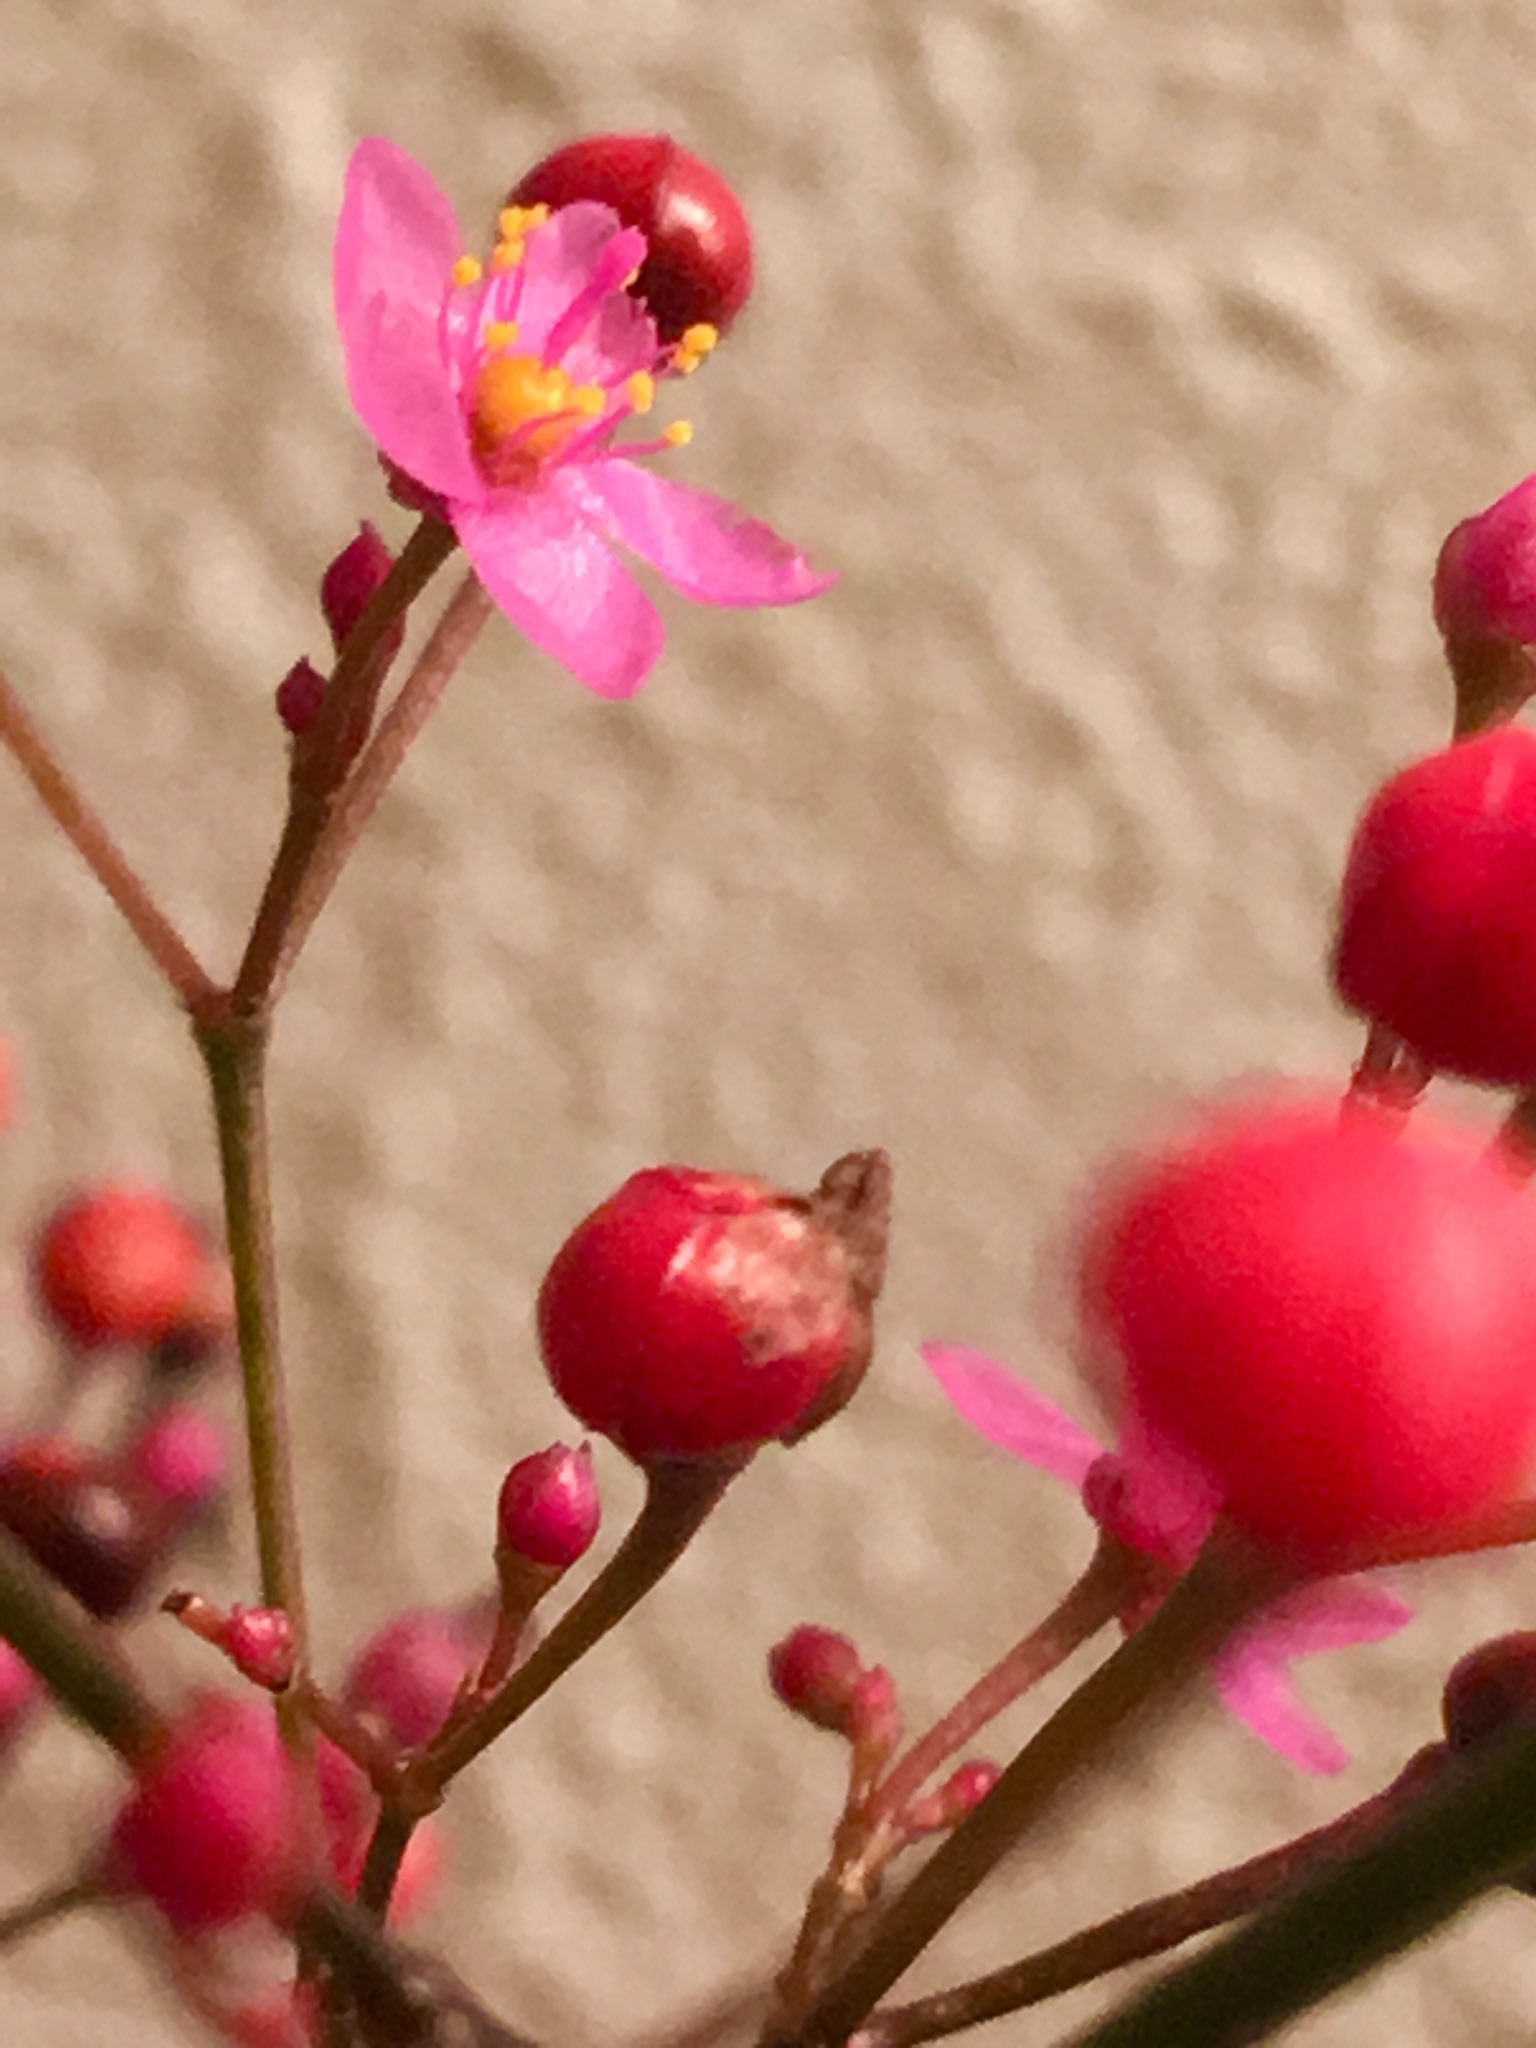 朝ジョグちゃん 赤い小さな つぶつぶの実が可愛いサンジソウ 午後3時に花咲くそうです 先日 15時に出会えました サンジソウ 身近な美しい花 自然からの贈り物 野花 飾らない自然の美しさ T Co 5u6m6m6wxq Twitter